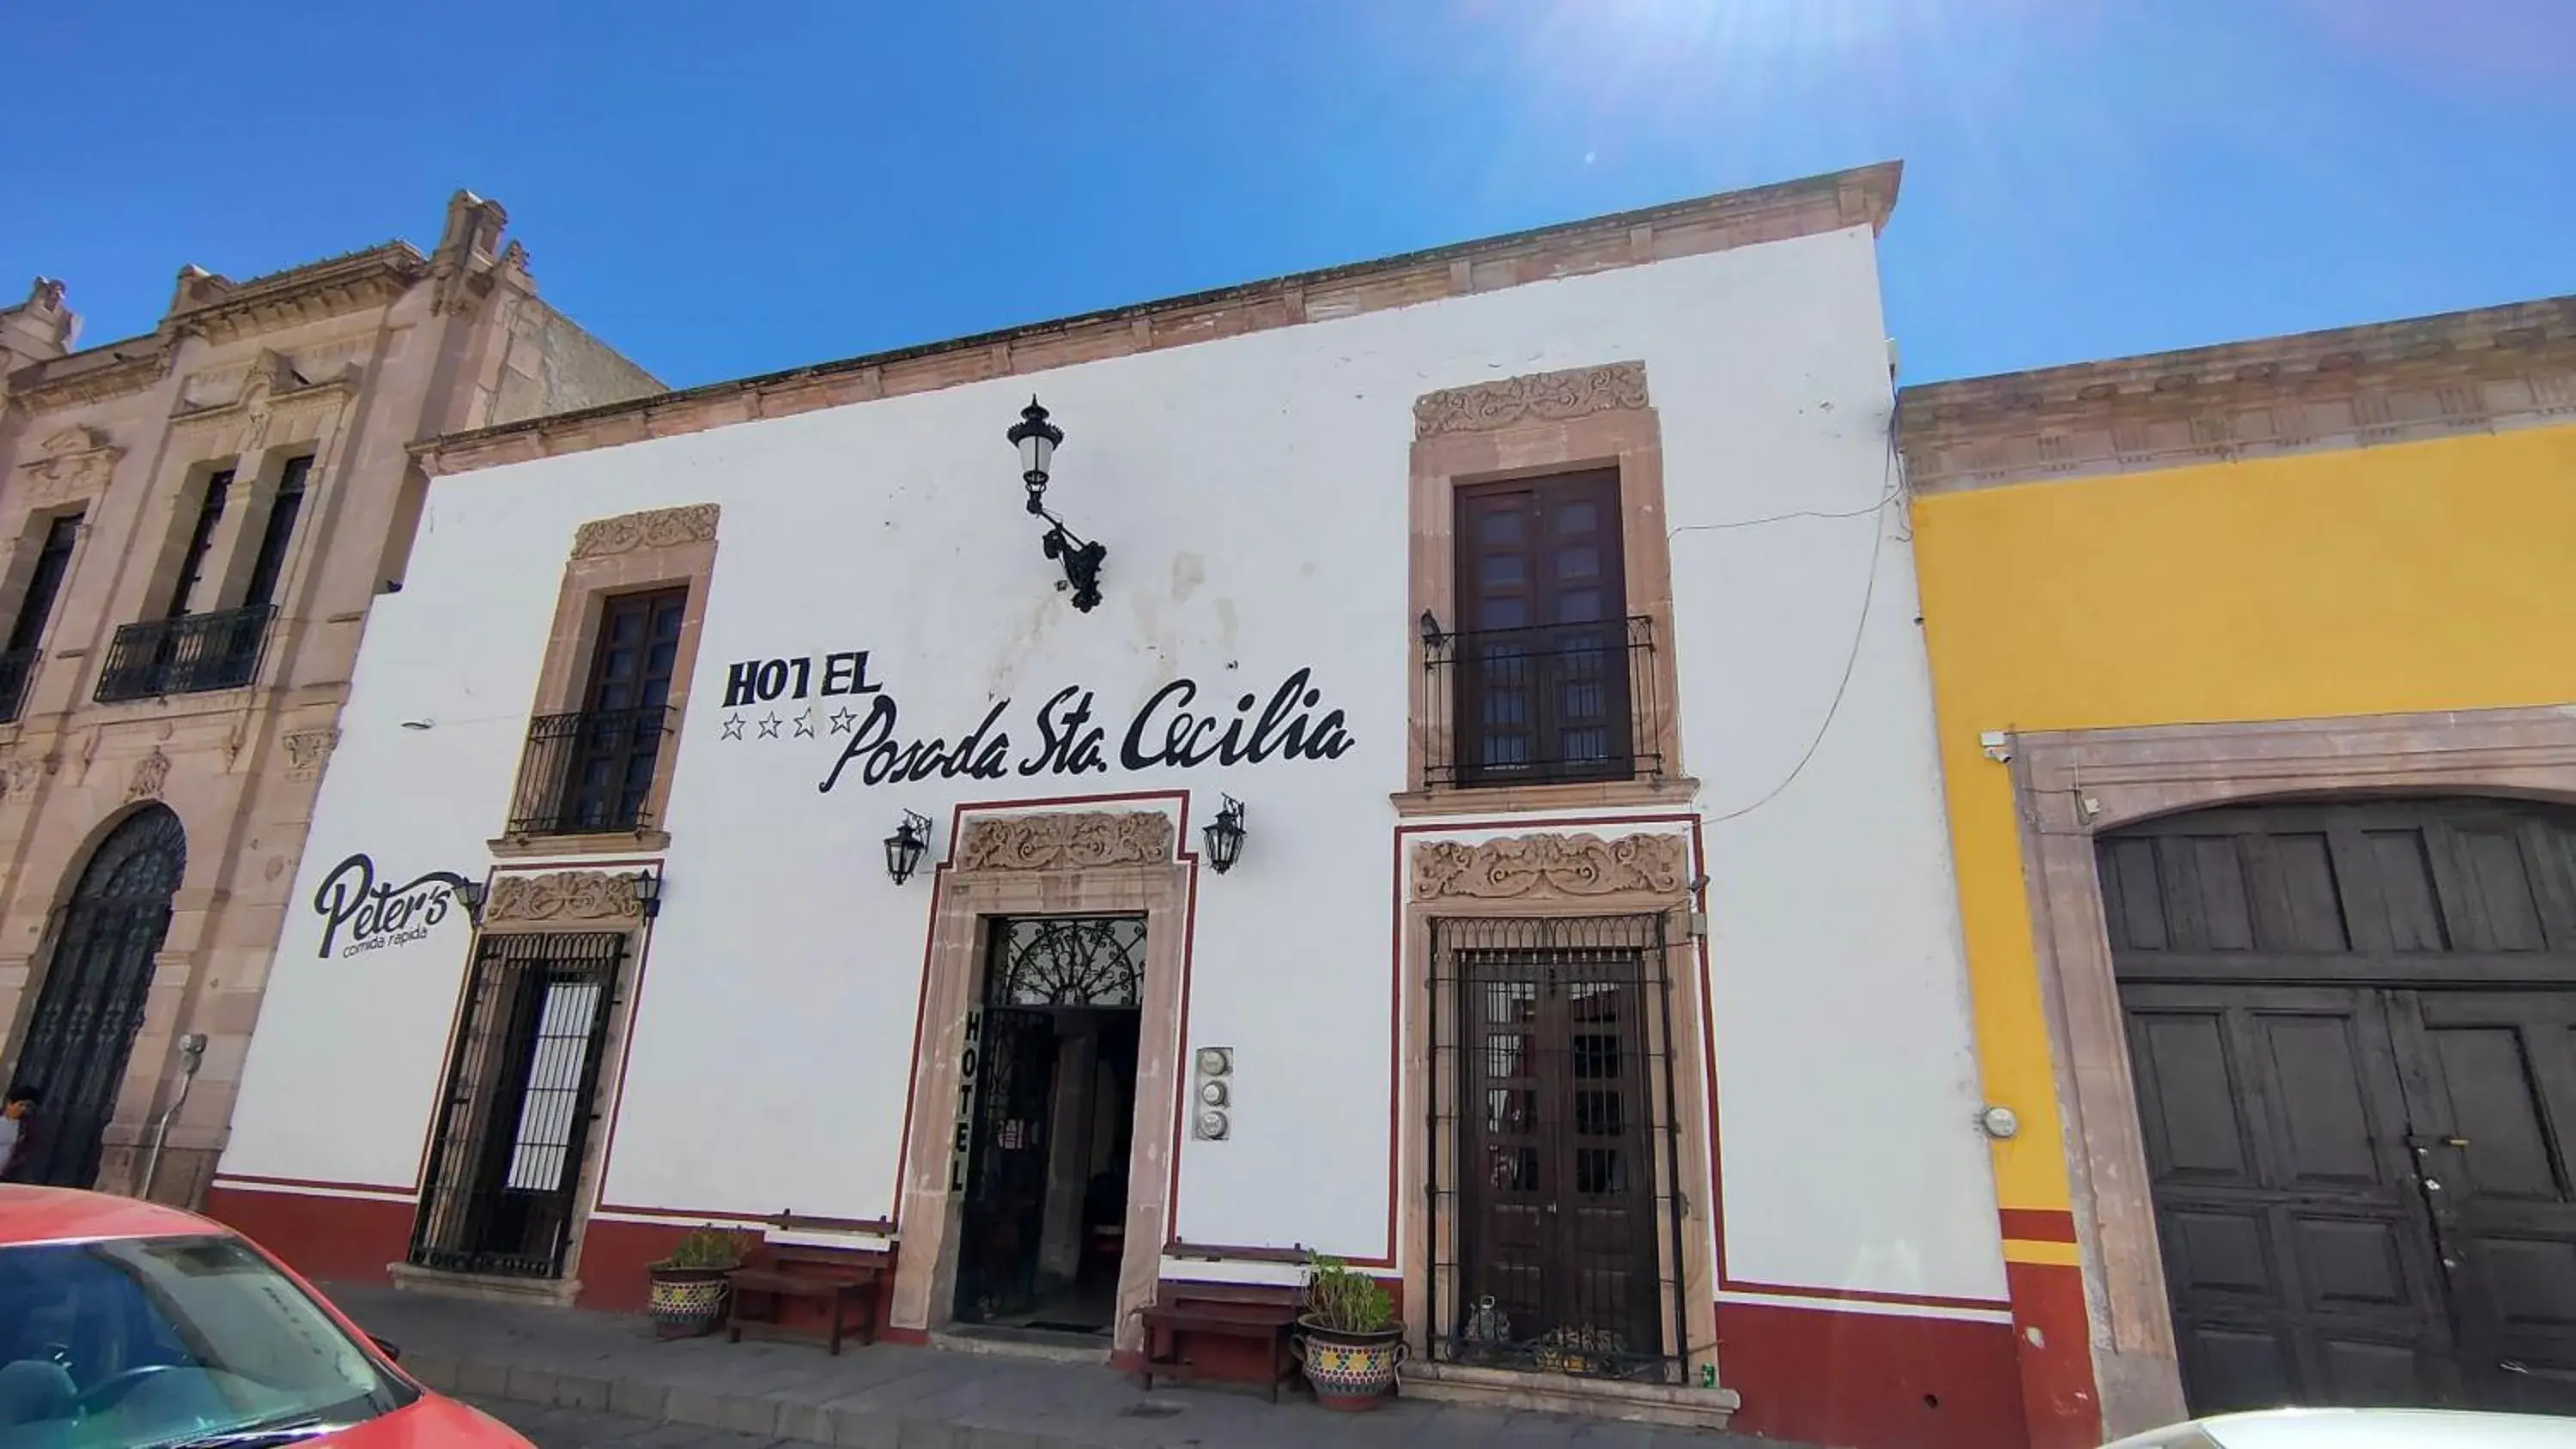 Facade/entrance, Property Building in OYO Posada Santa Cecilia, Jerez Zacatecas